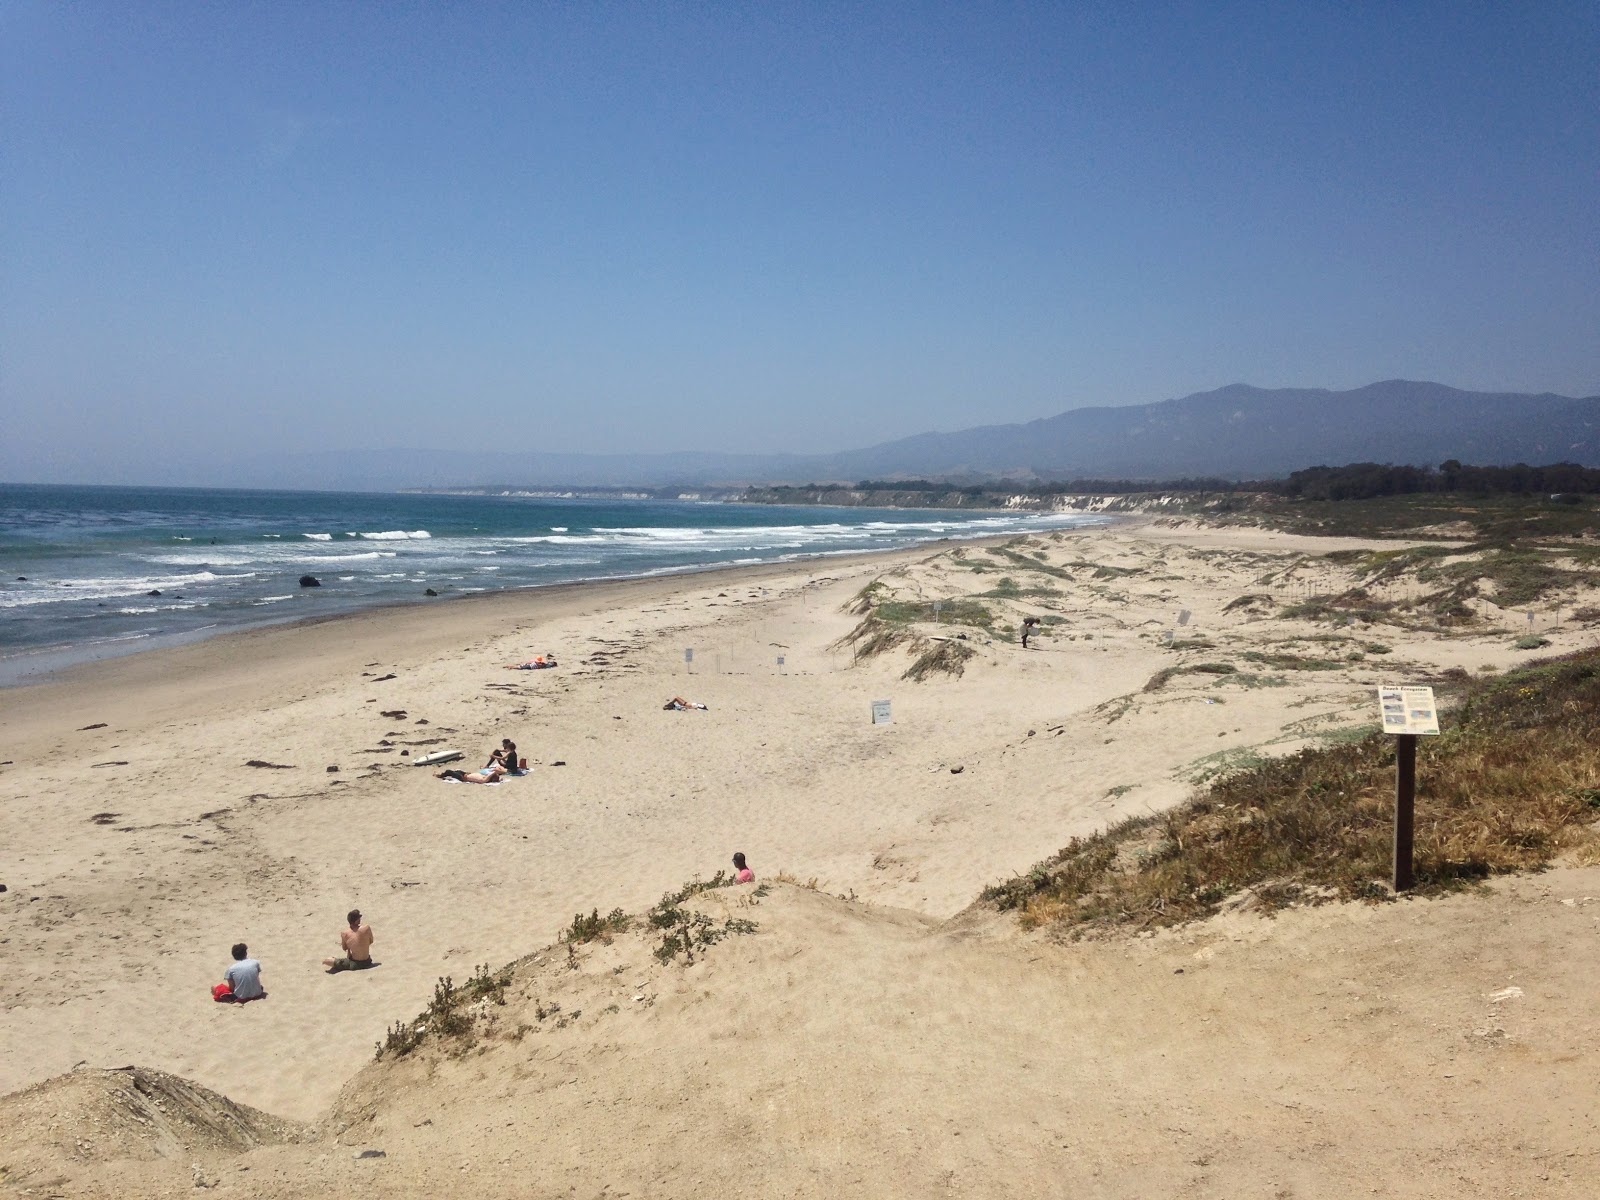 Fotografie cu Sands Beach - locul popular printre cunoscătorii de relaxare